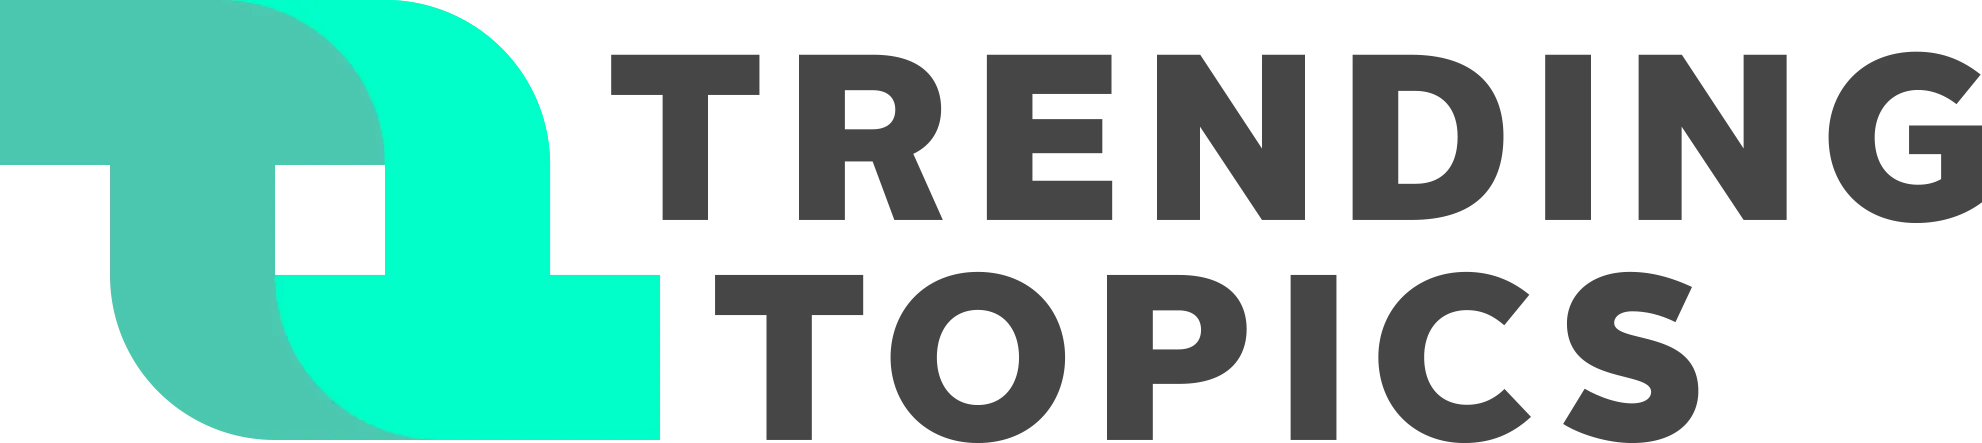 Trendingtopics Logo